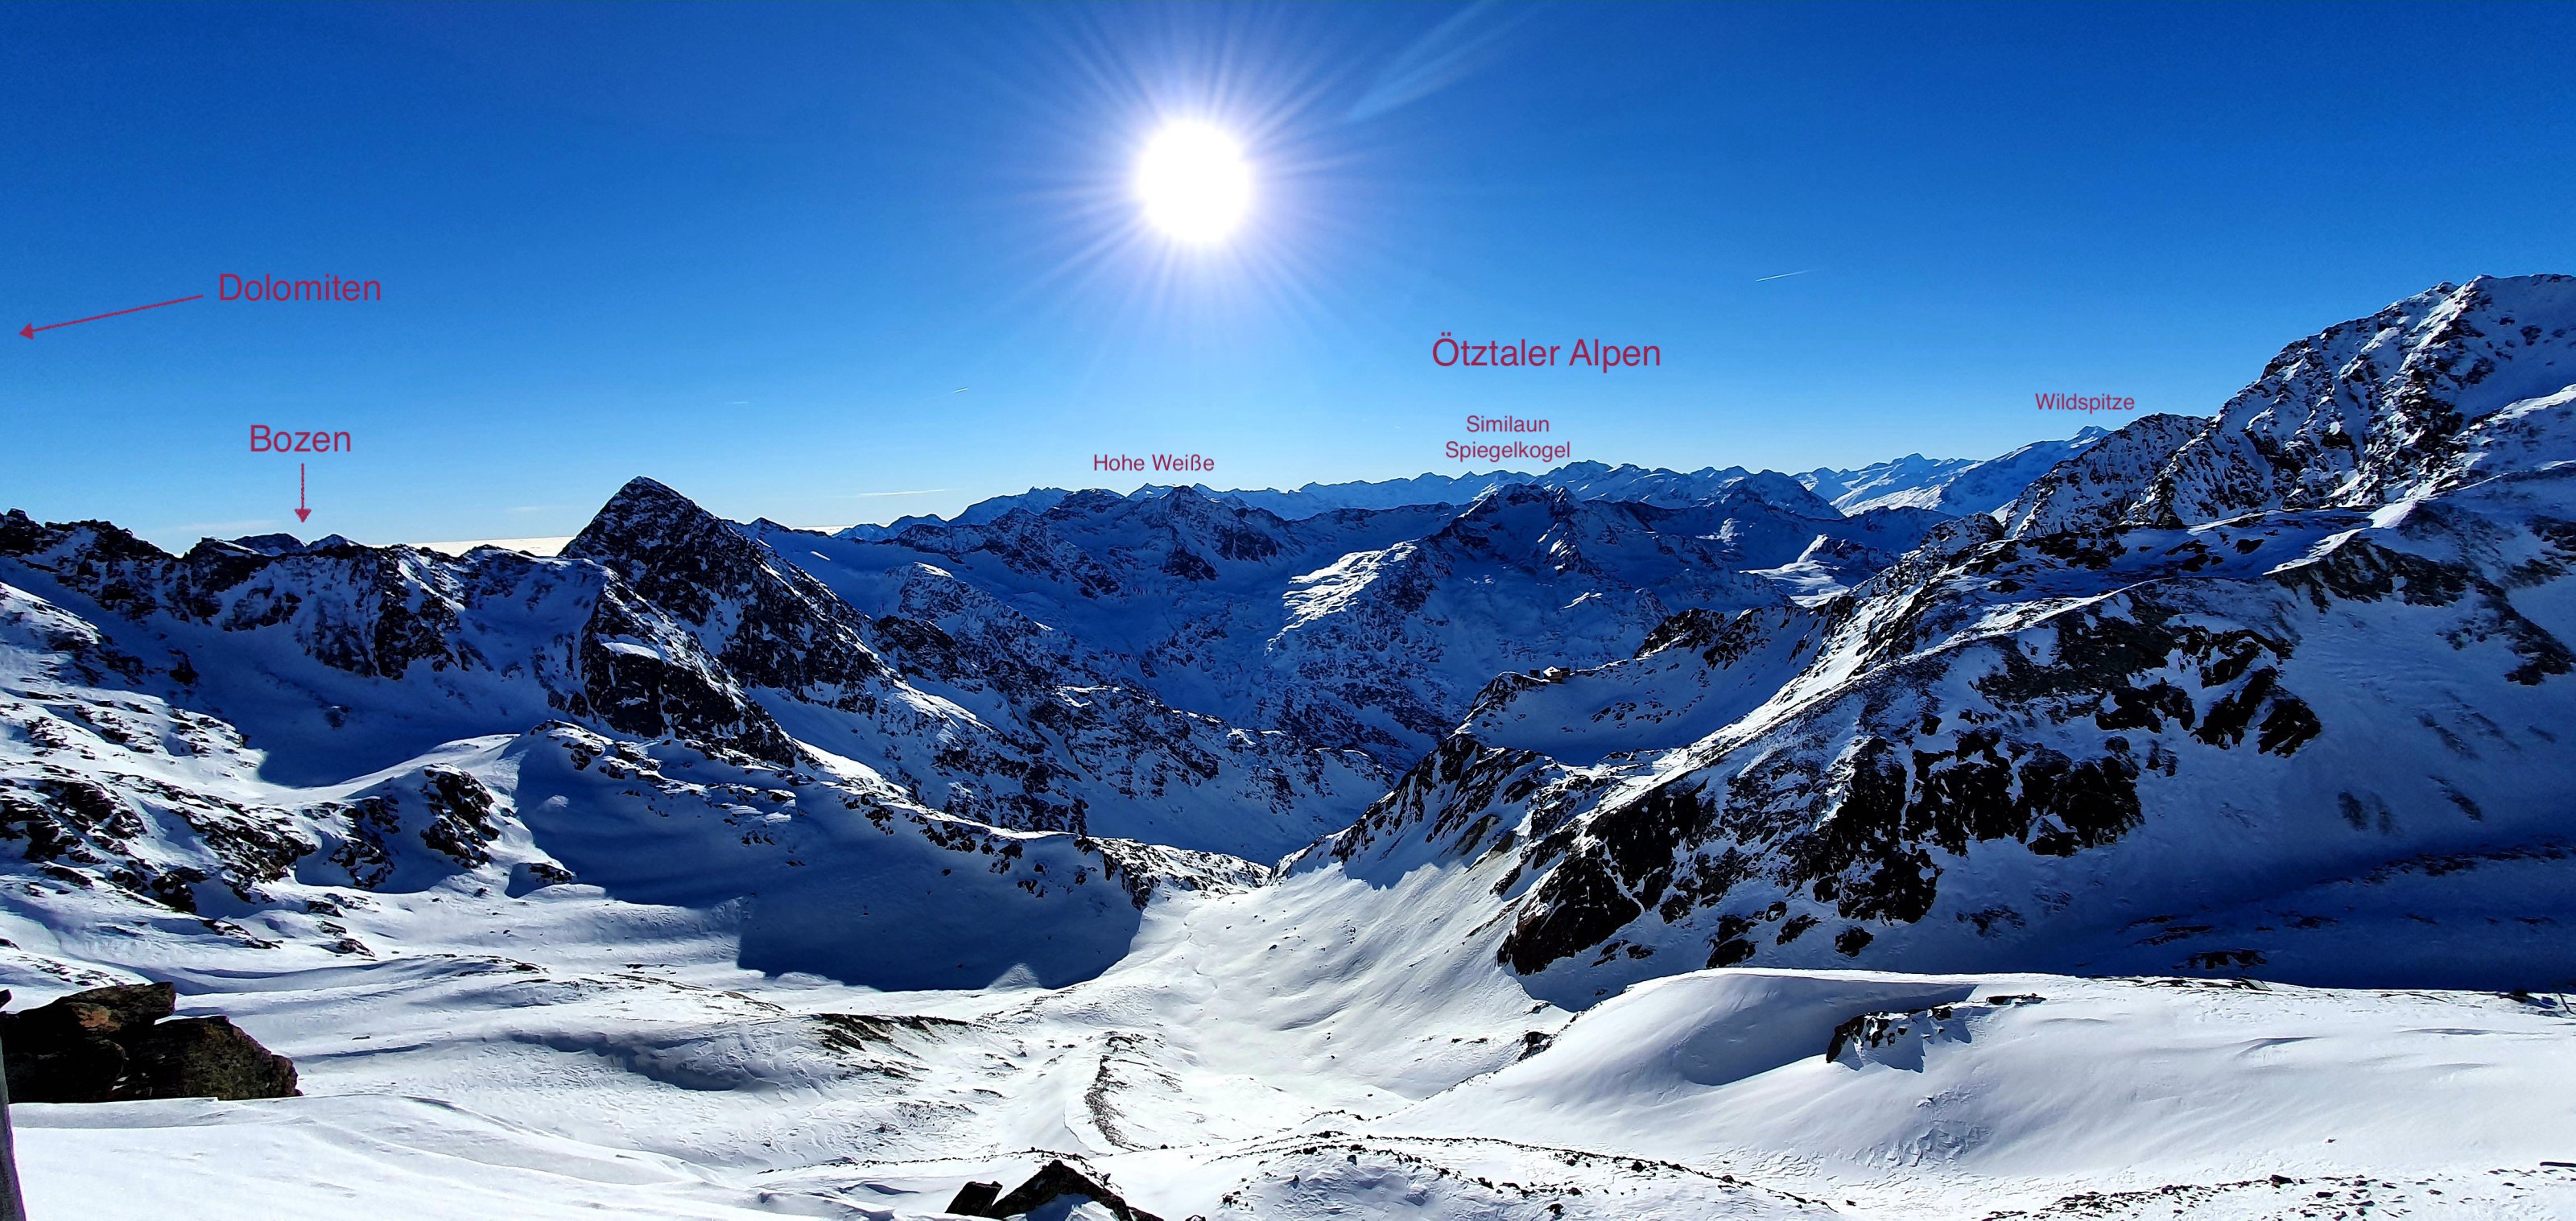 Ötztaler Alpen.jpg